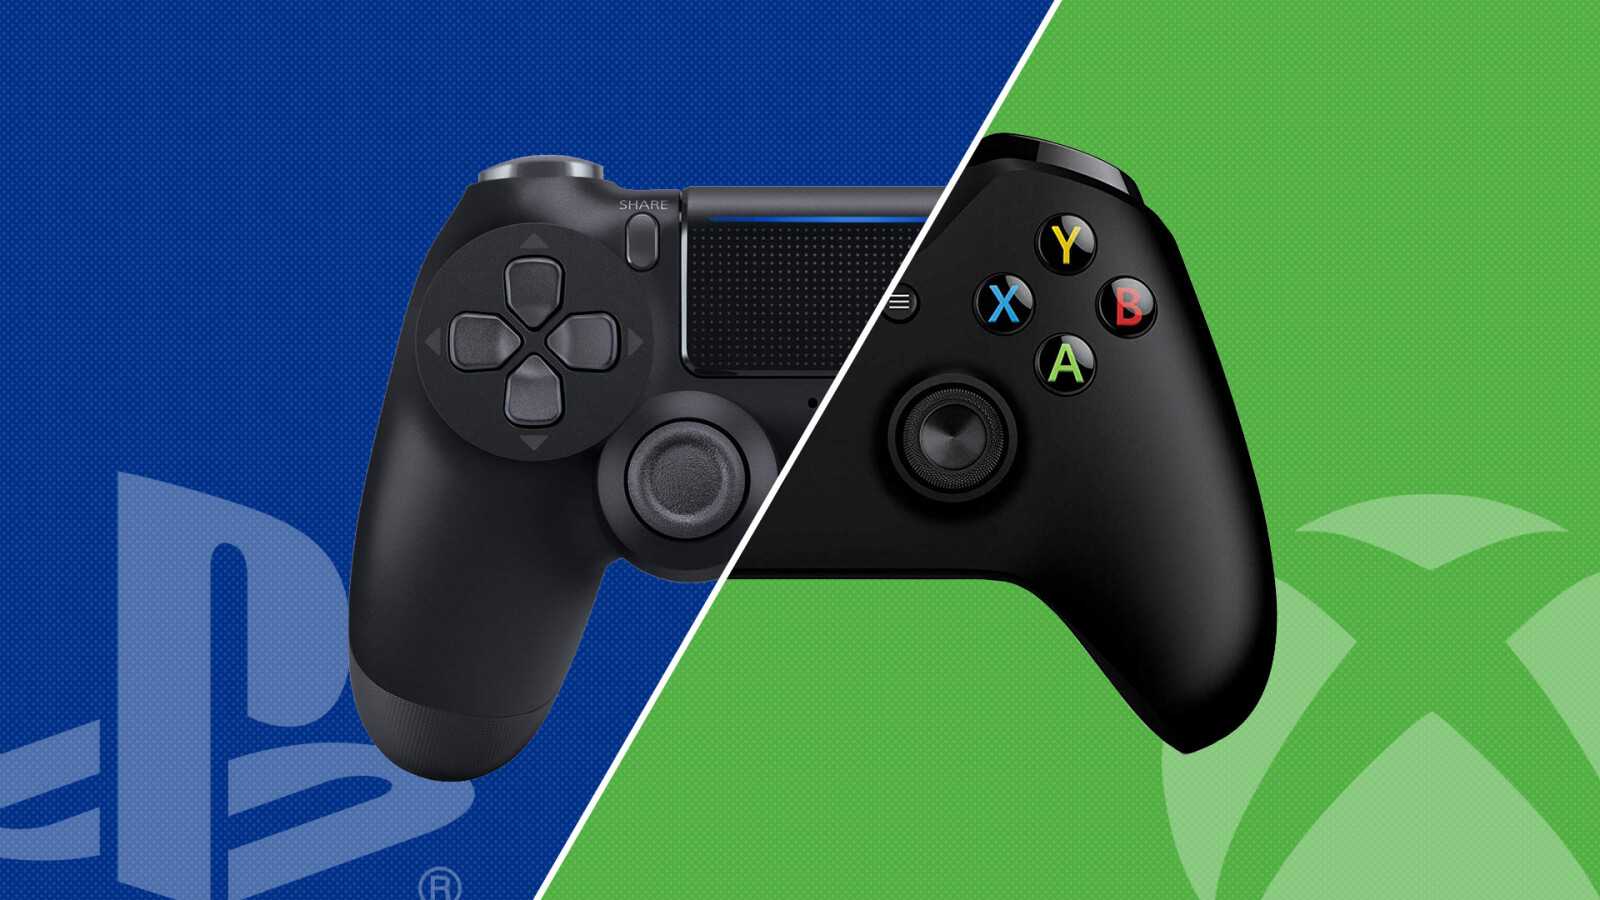 Компании Sony и Microsoft уже сообщили что в конце 2021 года на полках магазинов электроники должны появиться их новые игровые консоли – PlayStation 5 и Xbox Scarlett